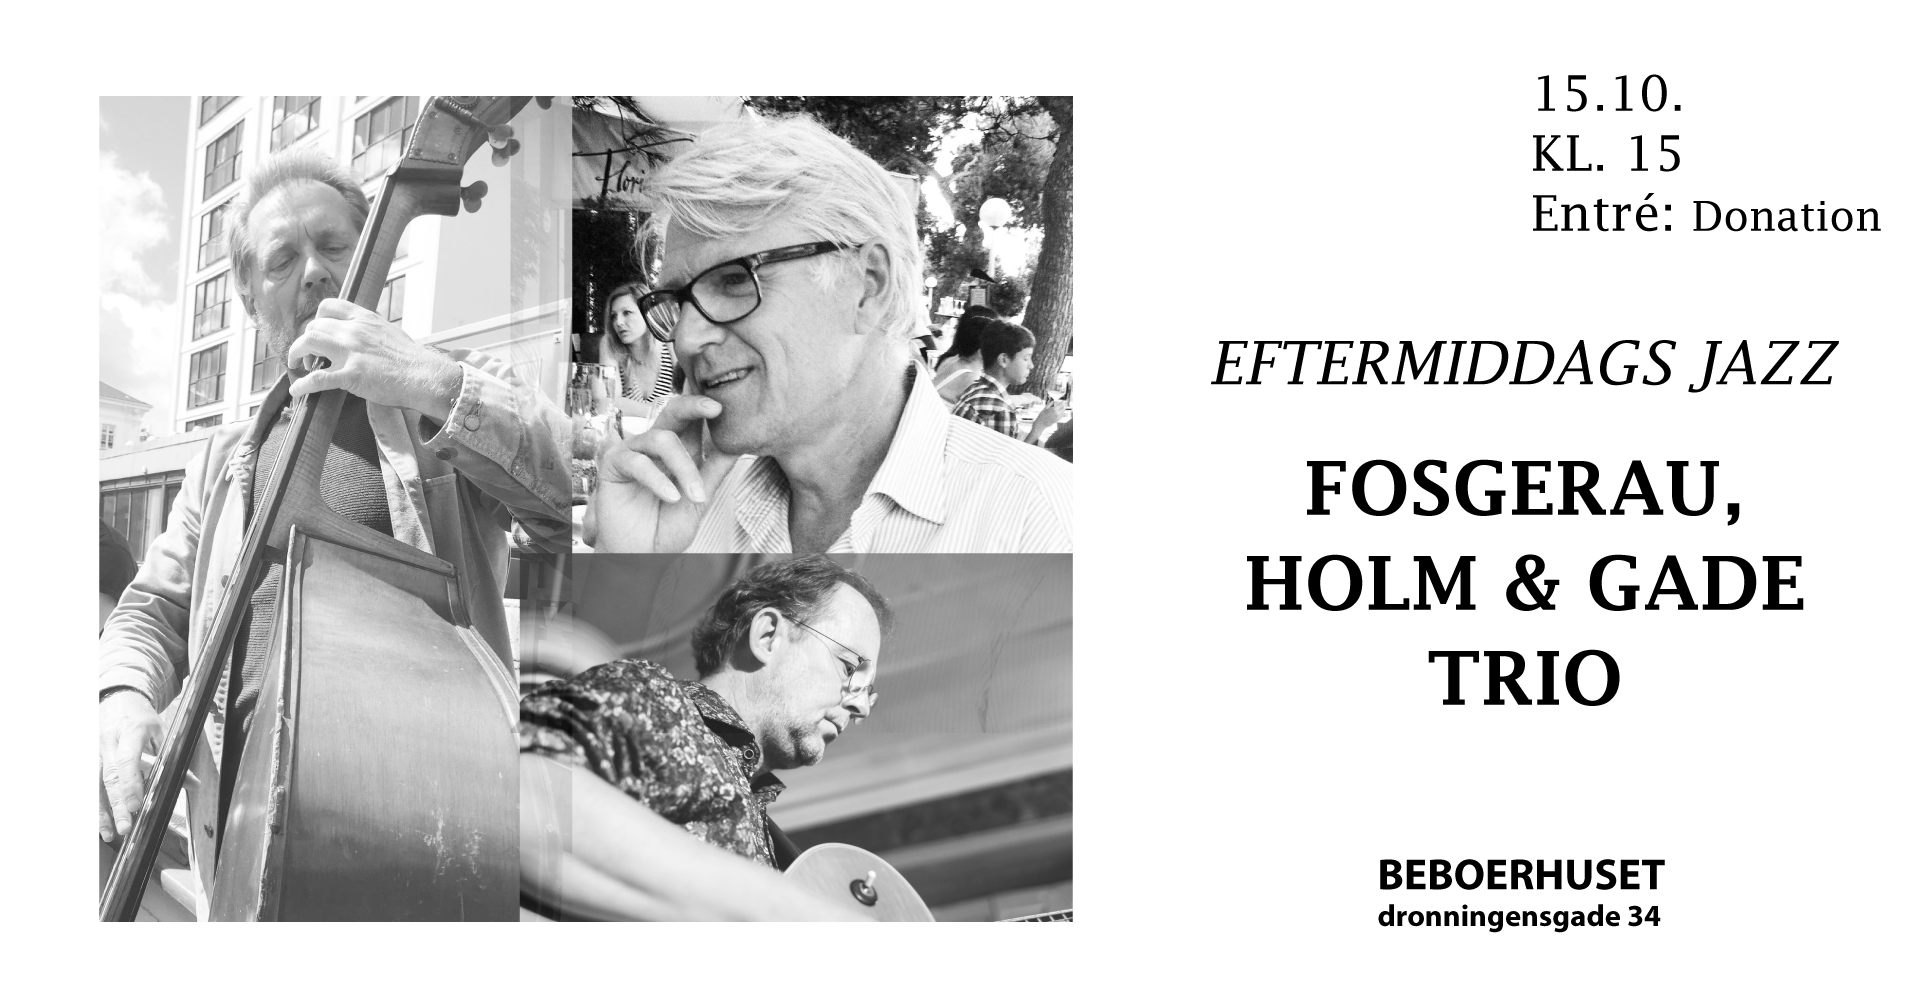 Fosgerau, Holm & Gade Trio